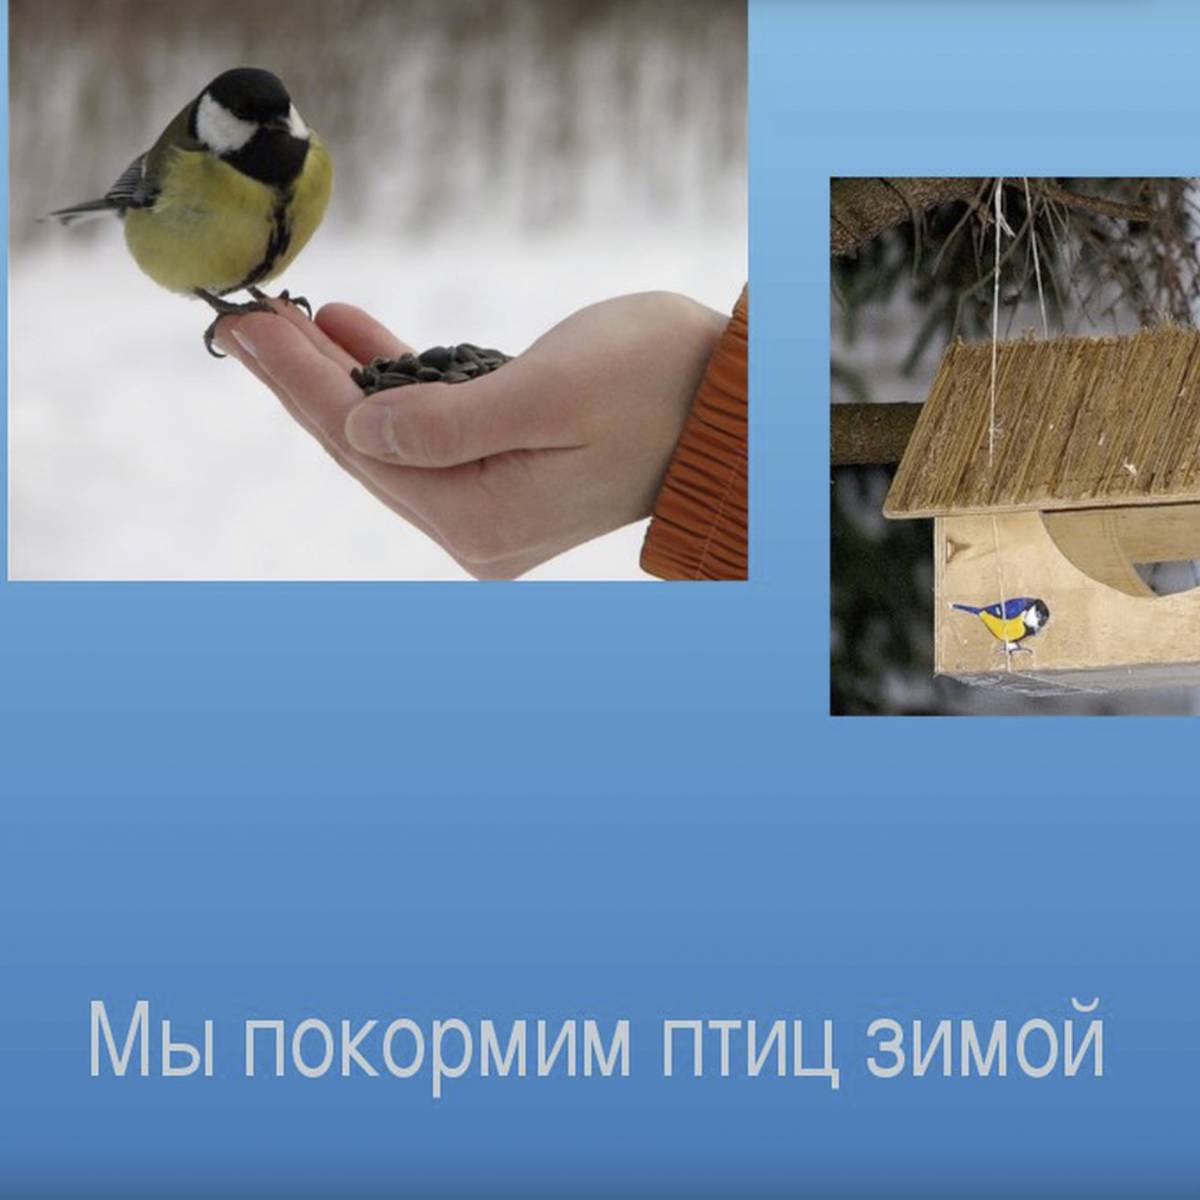 Покормите птиц зимой #11